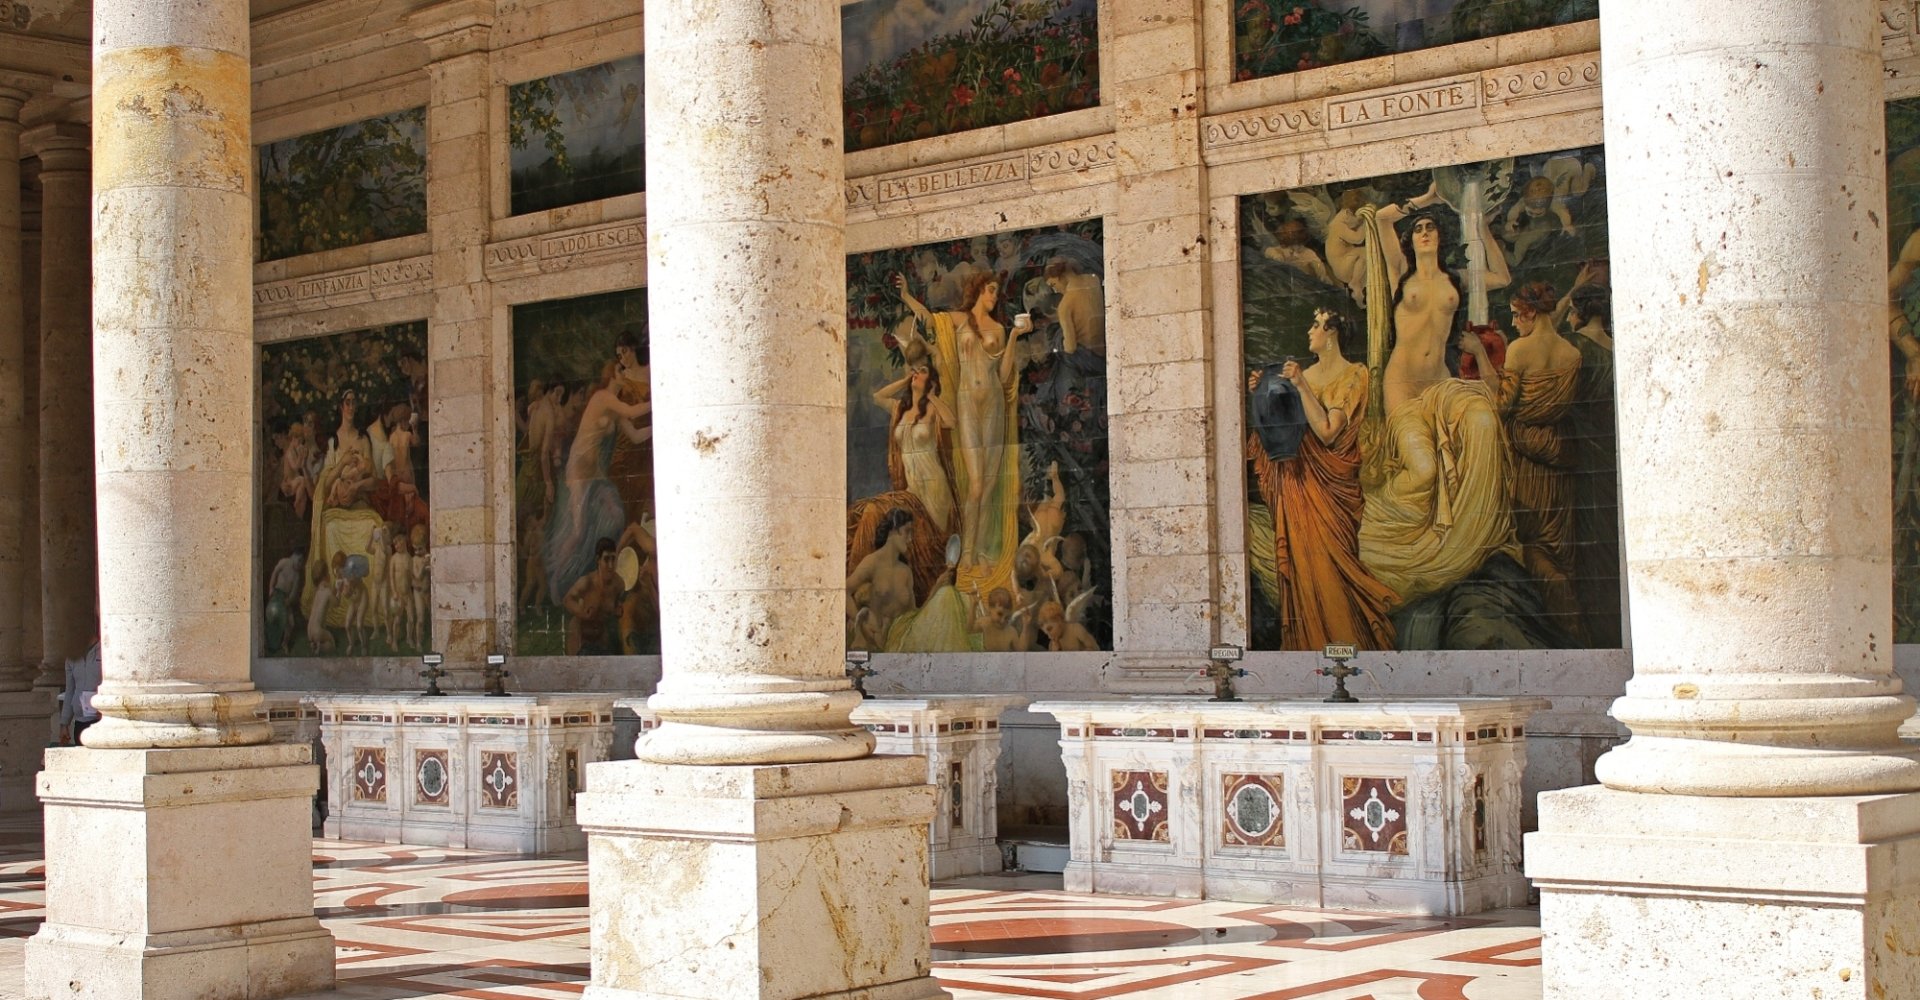 Termas Tettuccio en Montecatini Terme - Frescos de Basilio Cascella